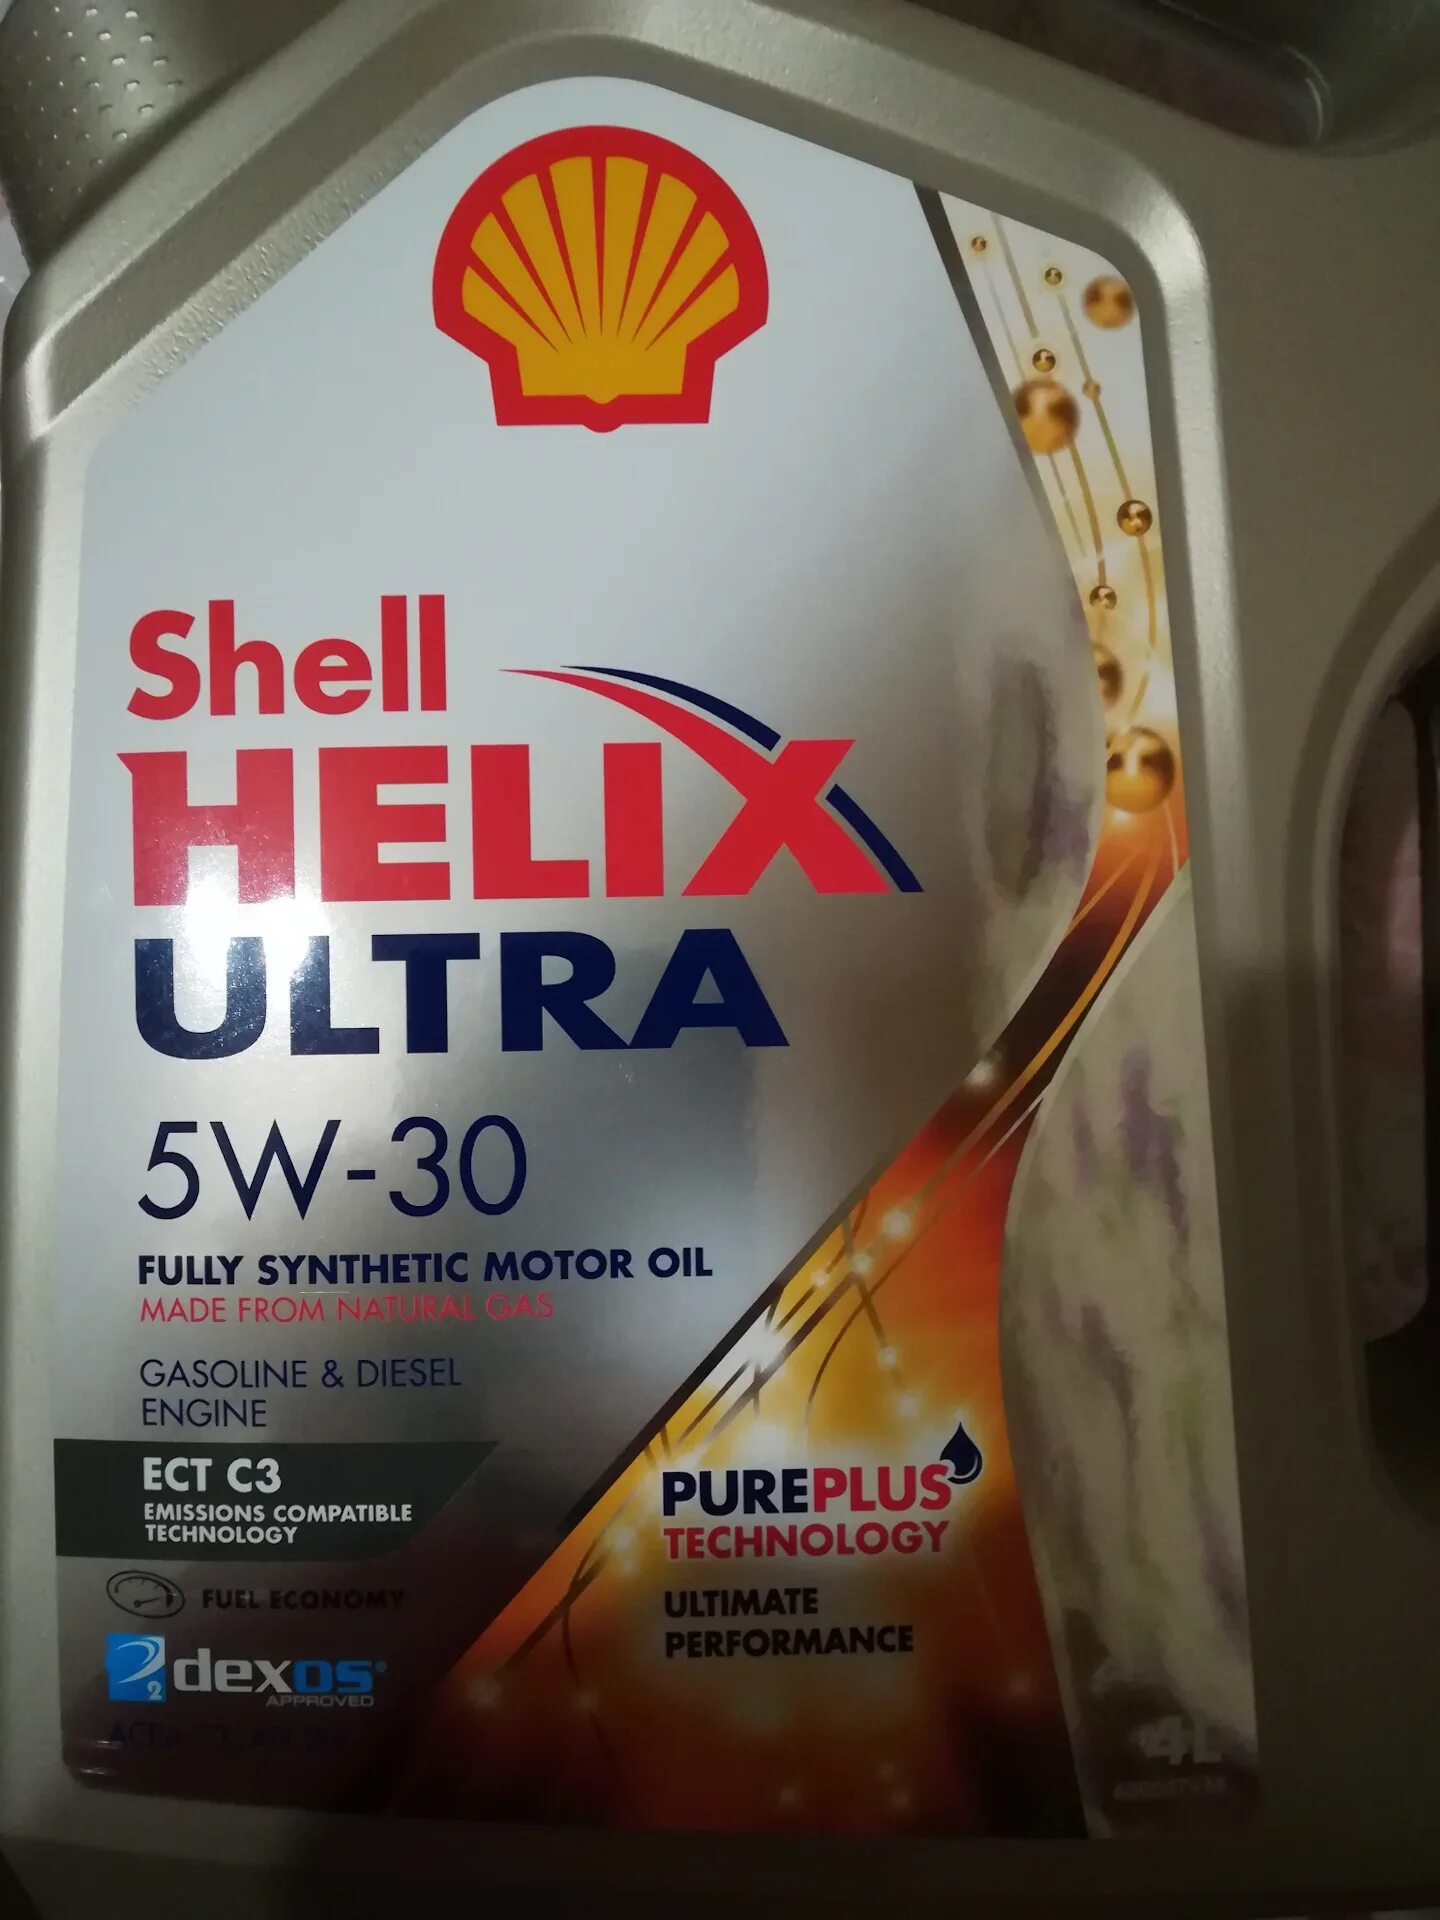 Shell 5w30 Hyundai. Масло Шелл Хеликс ультра 5w30 для Хендай Солярис. Shell Helix Ultra 5w30 в Хендай Солярис. Шелл ультра 5w30 Хундай. Допуски масел шелл